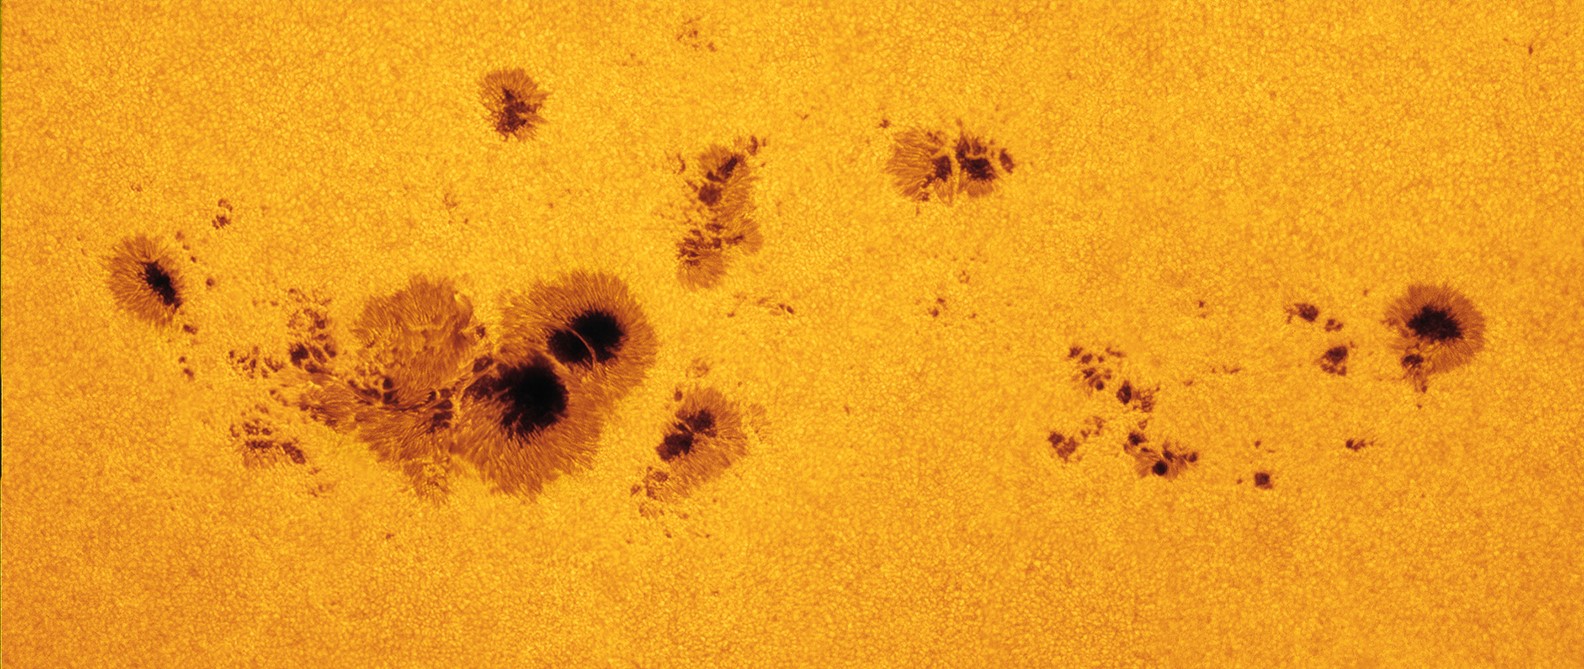 A group of sunspots